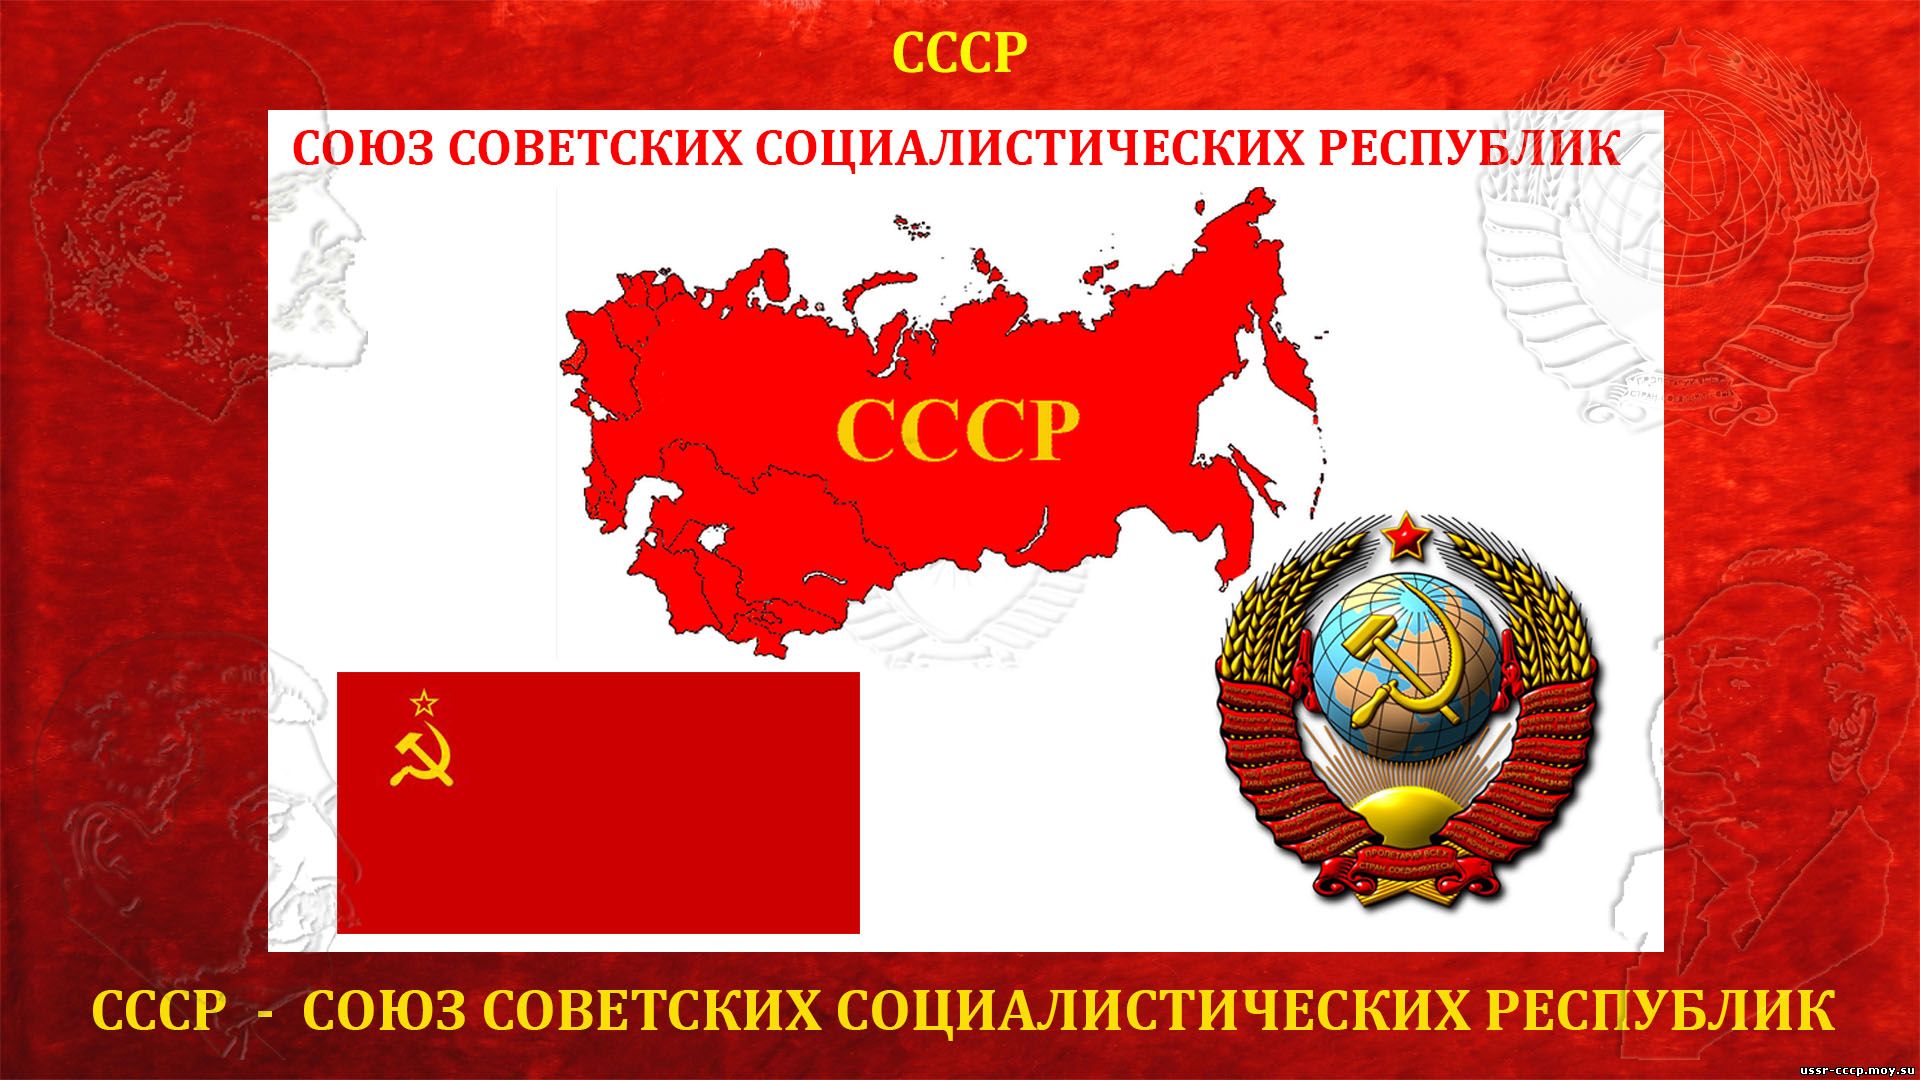 100 лет назад был образован СССР (30.12.1922 — де-юре) С ПРАЗДНИКОМ ТОВАРИЩИ!!!